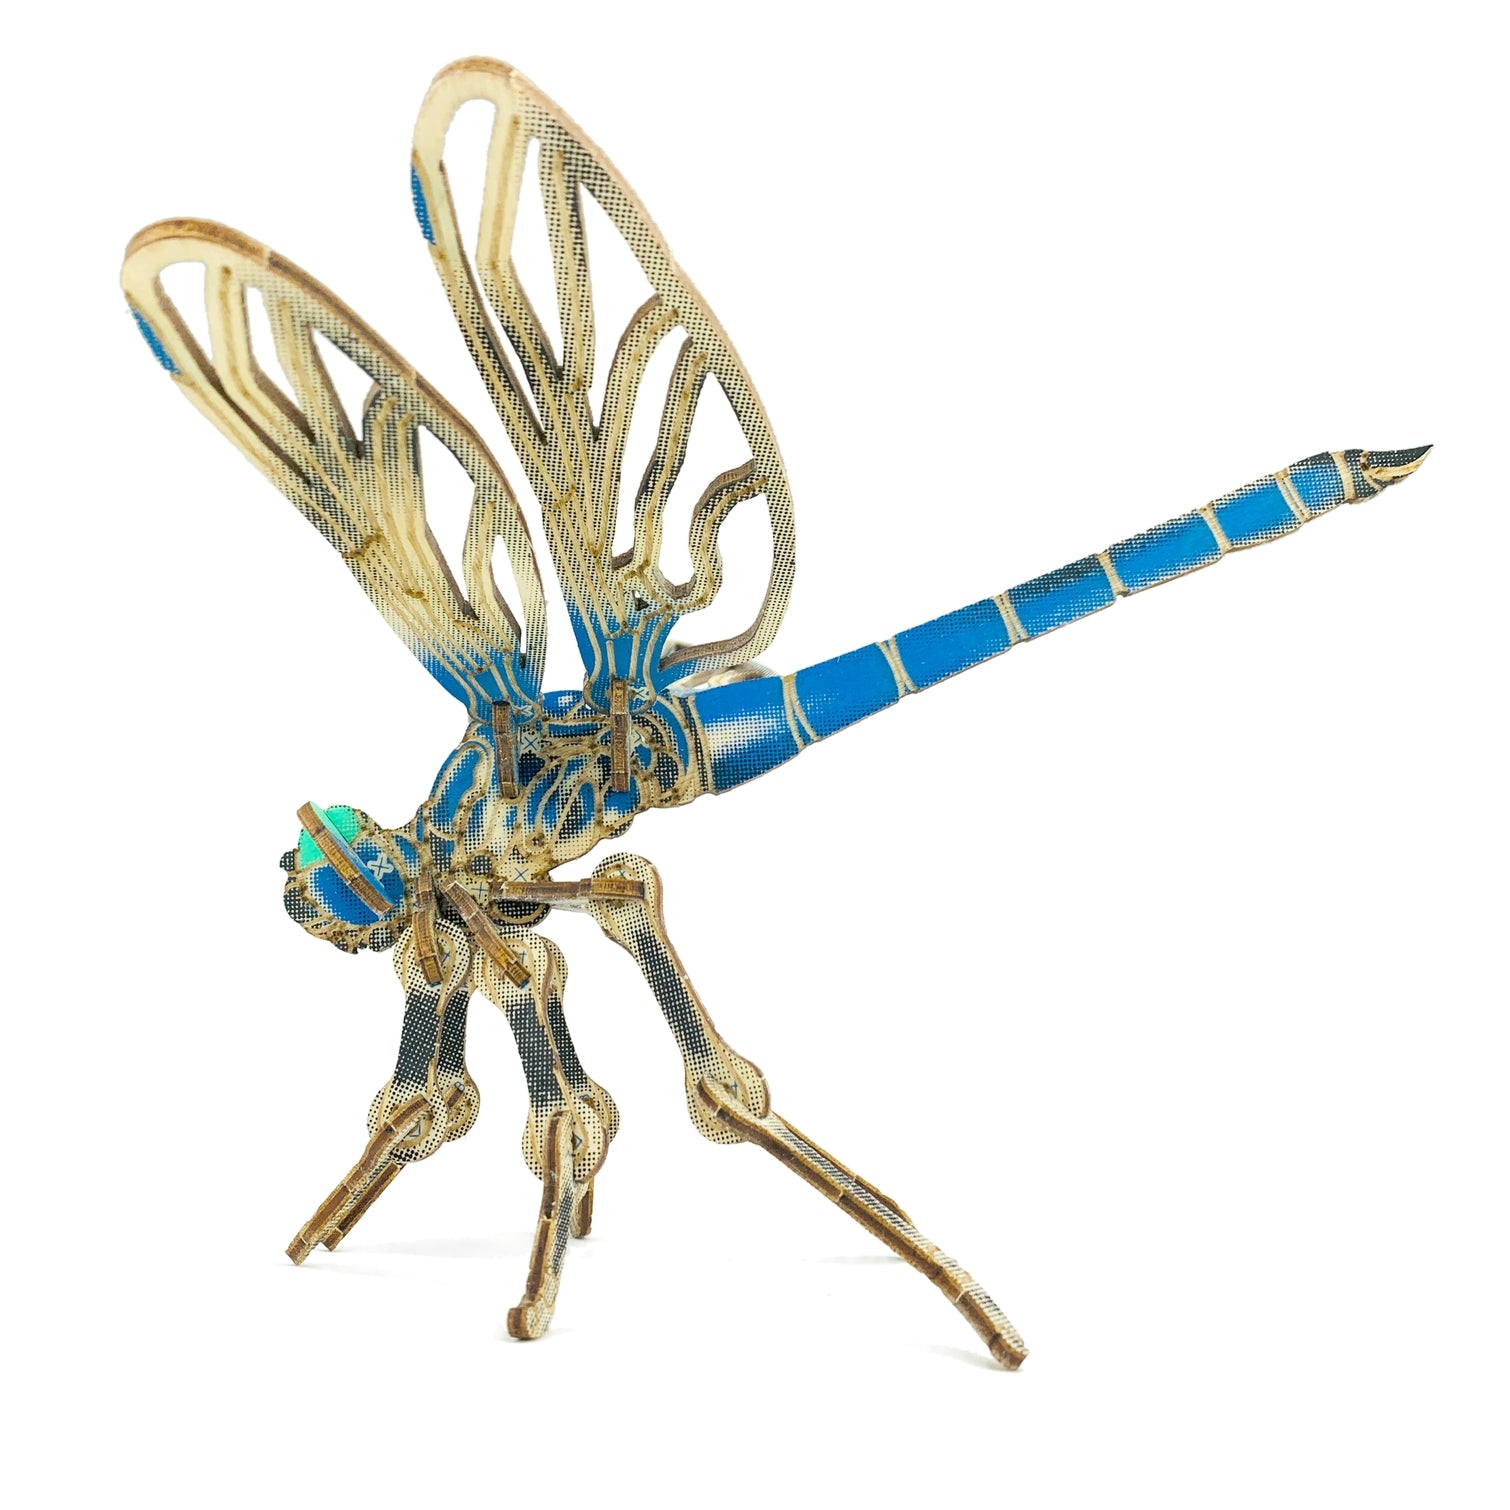 Arthropoda : Dragonfly